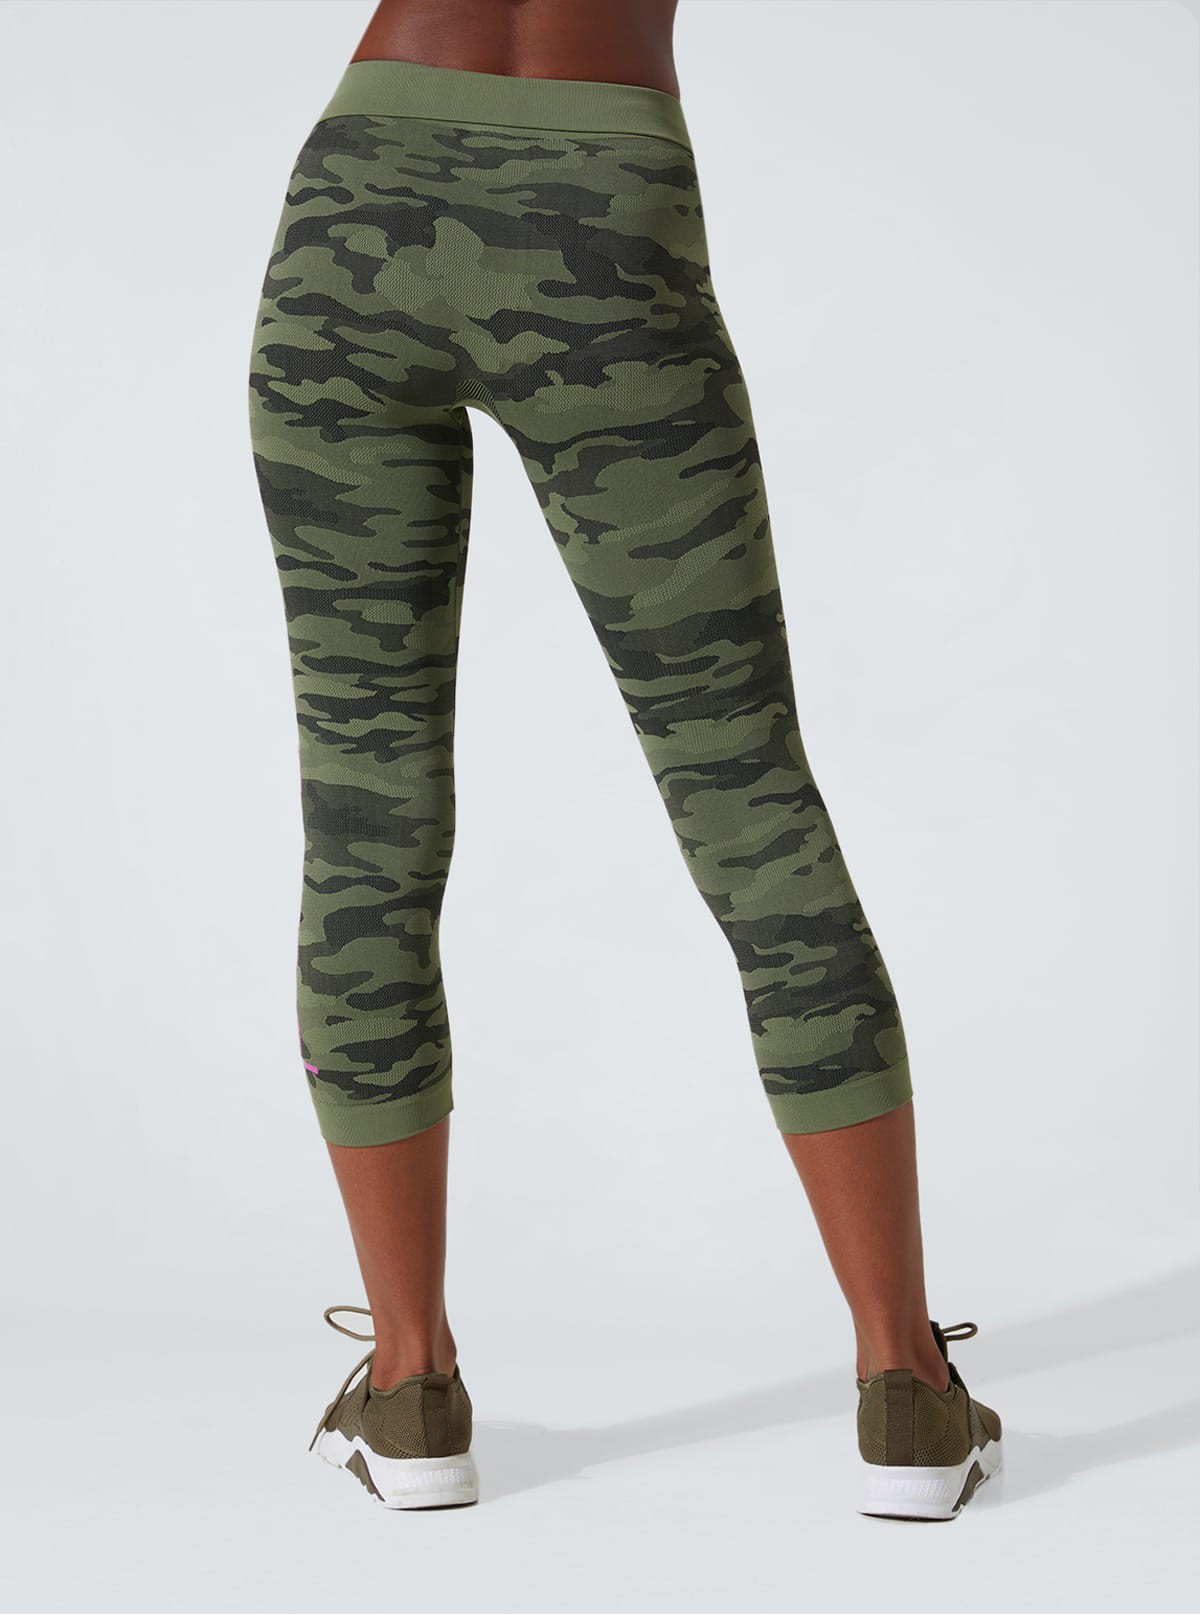 Short Leggings Capri Sport Camouflage in Dermofibra® Cosmetics